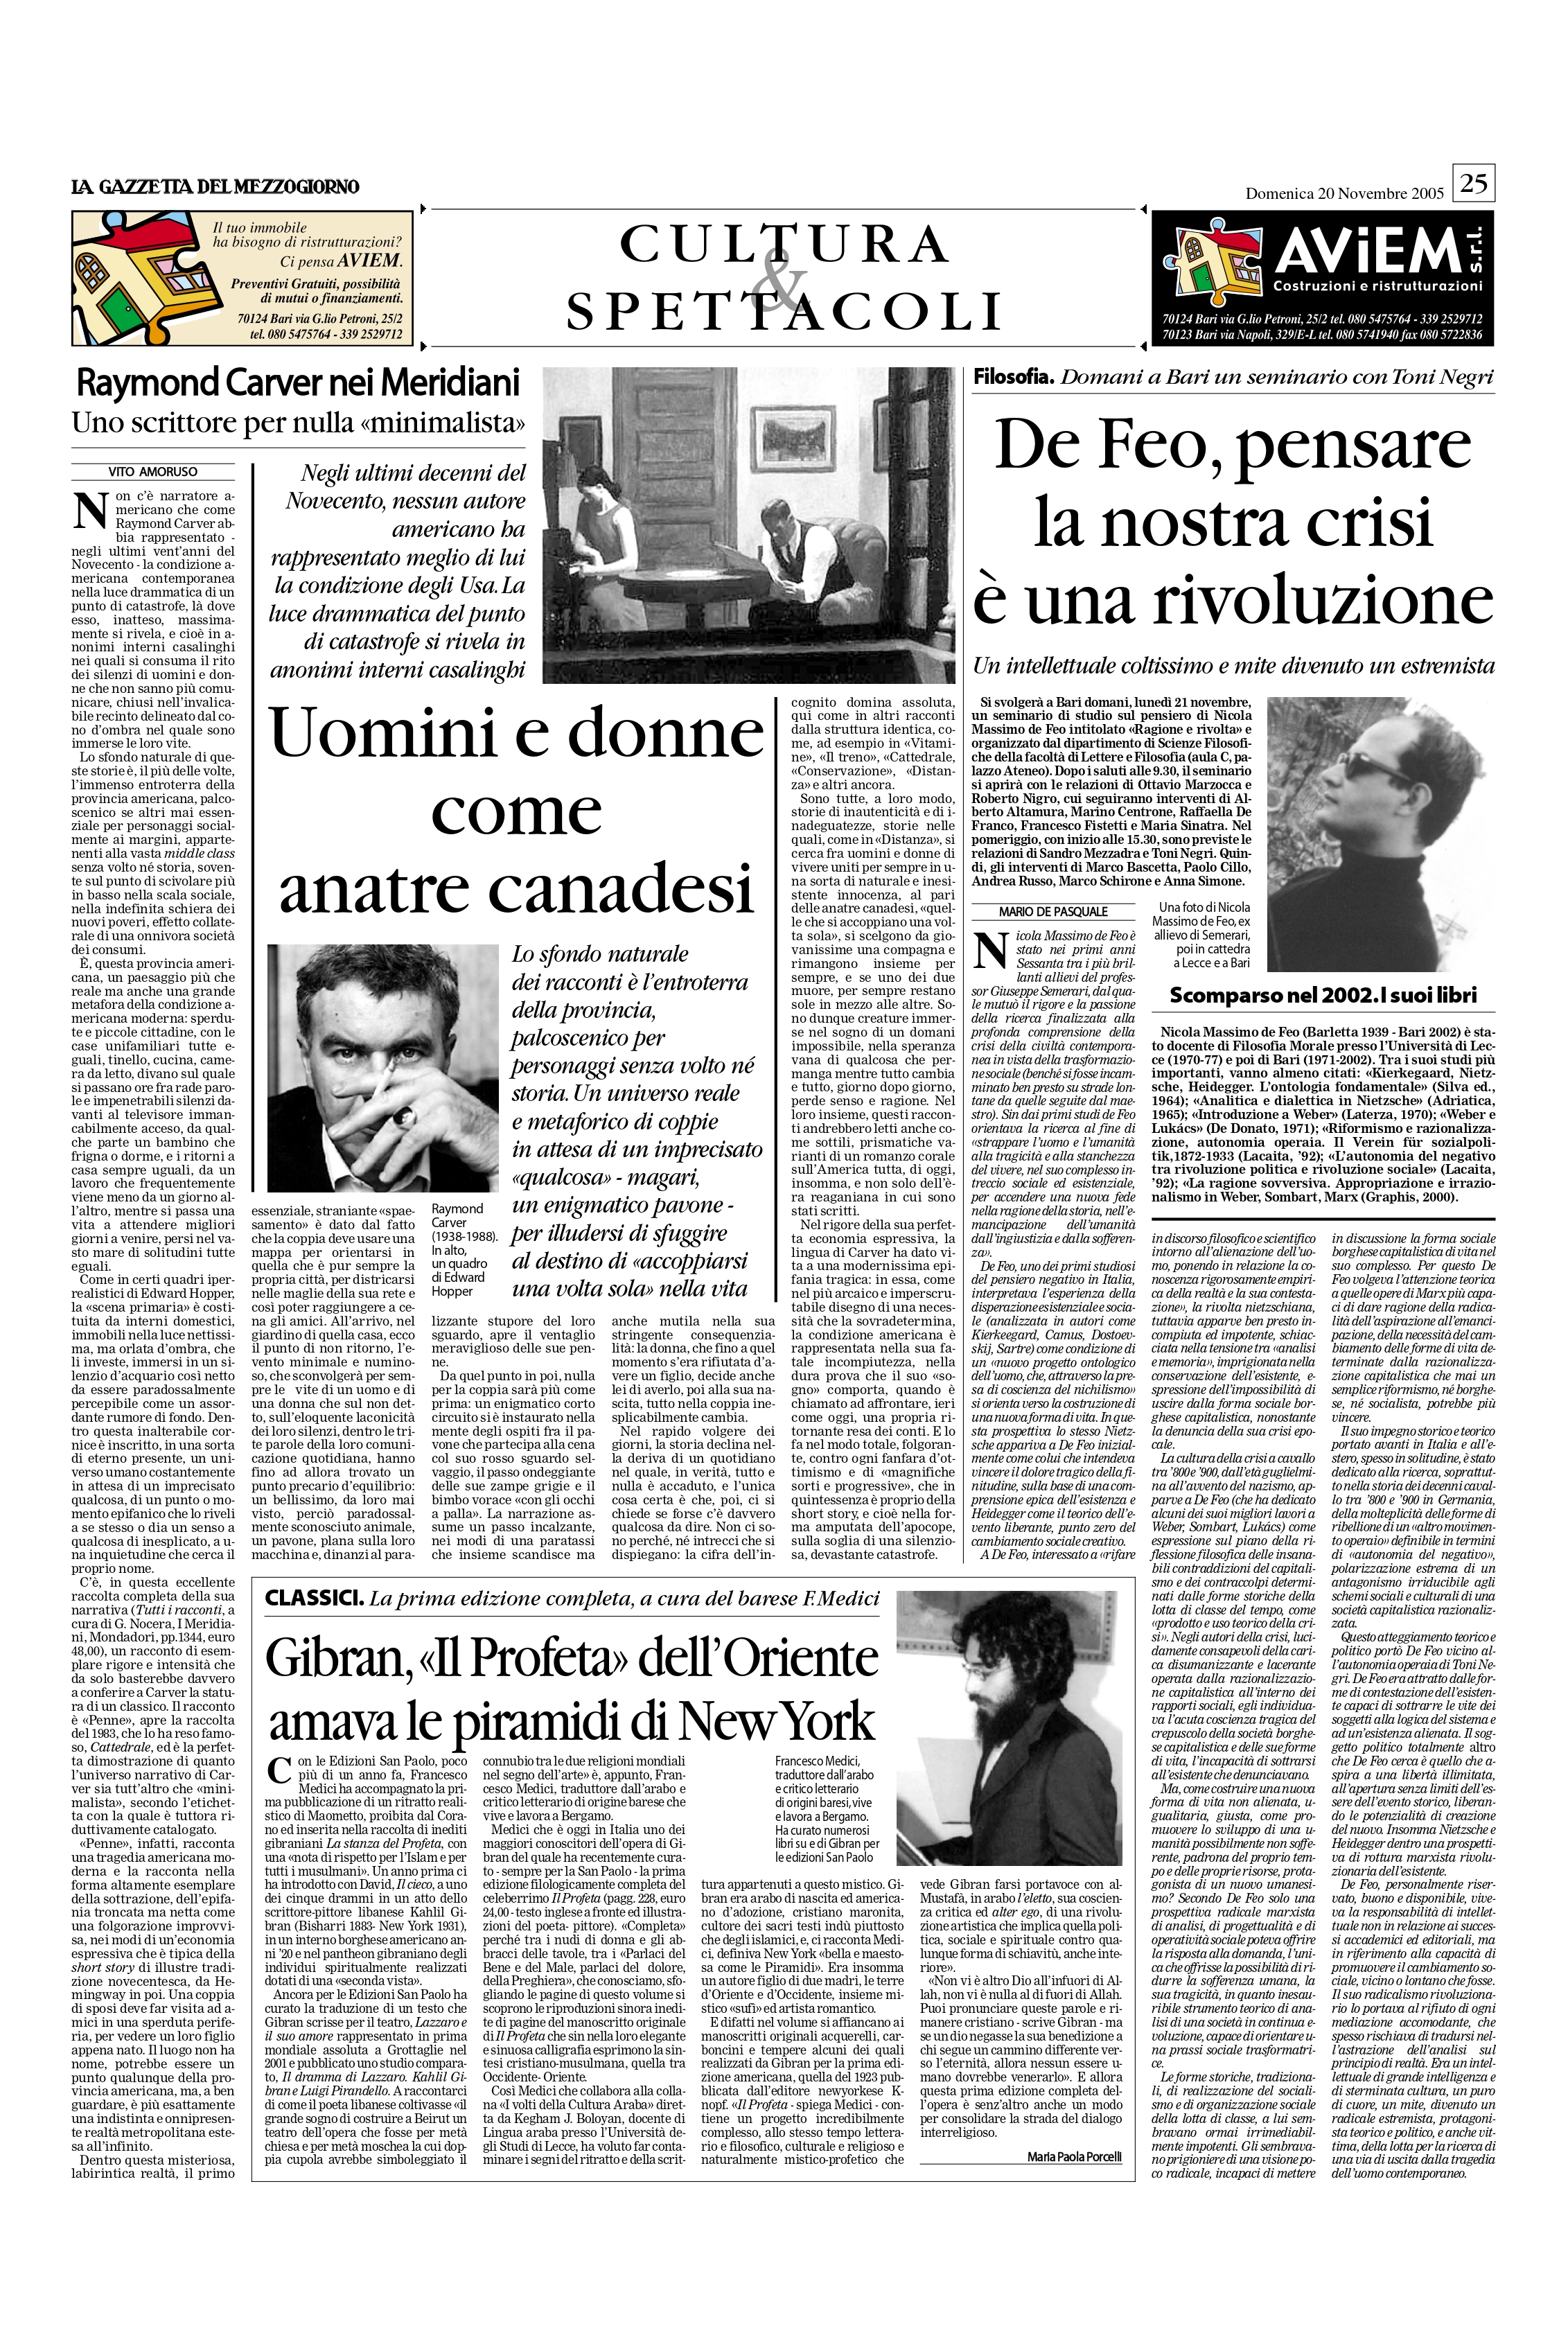 Maria Paola Porcelli, "Gibran, «Il Profeta» dell’Oriente amava le piramidi di New York", La Gazzetta del Mezzogiorno, Nov 20, 2005, p. 25 (review)